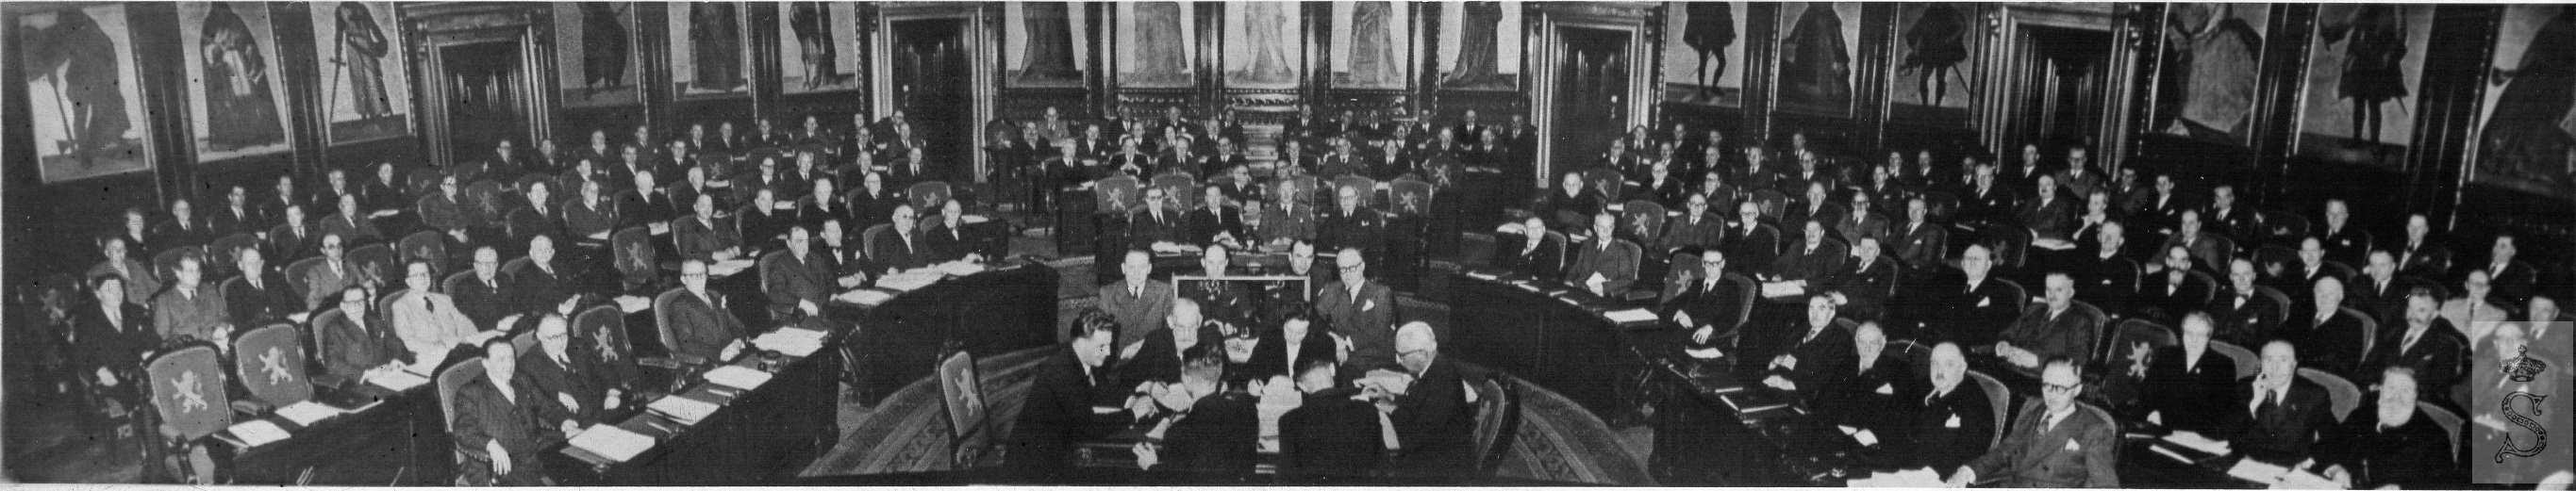 Overzichtsfoto van de Senaat in vergadering - 1949